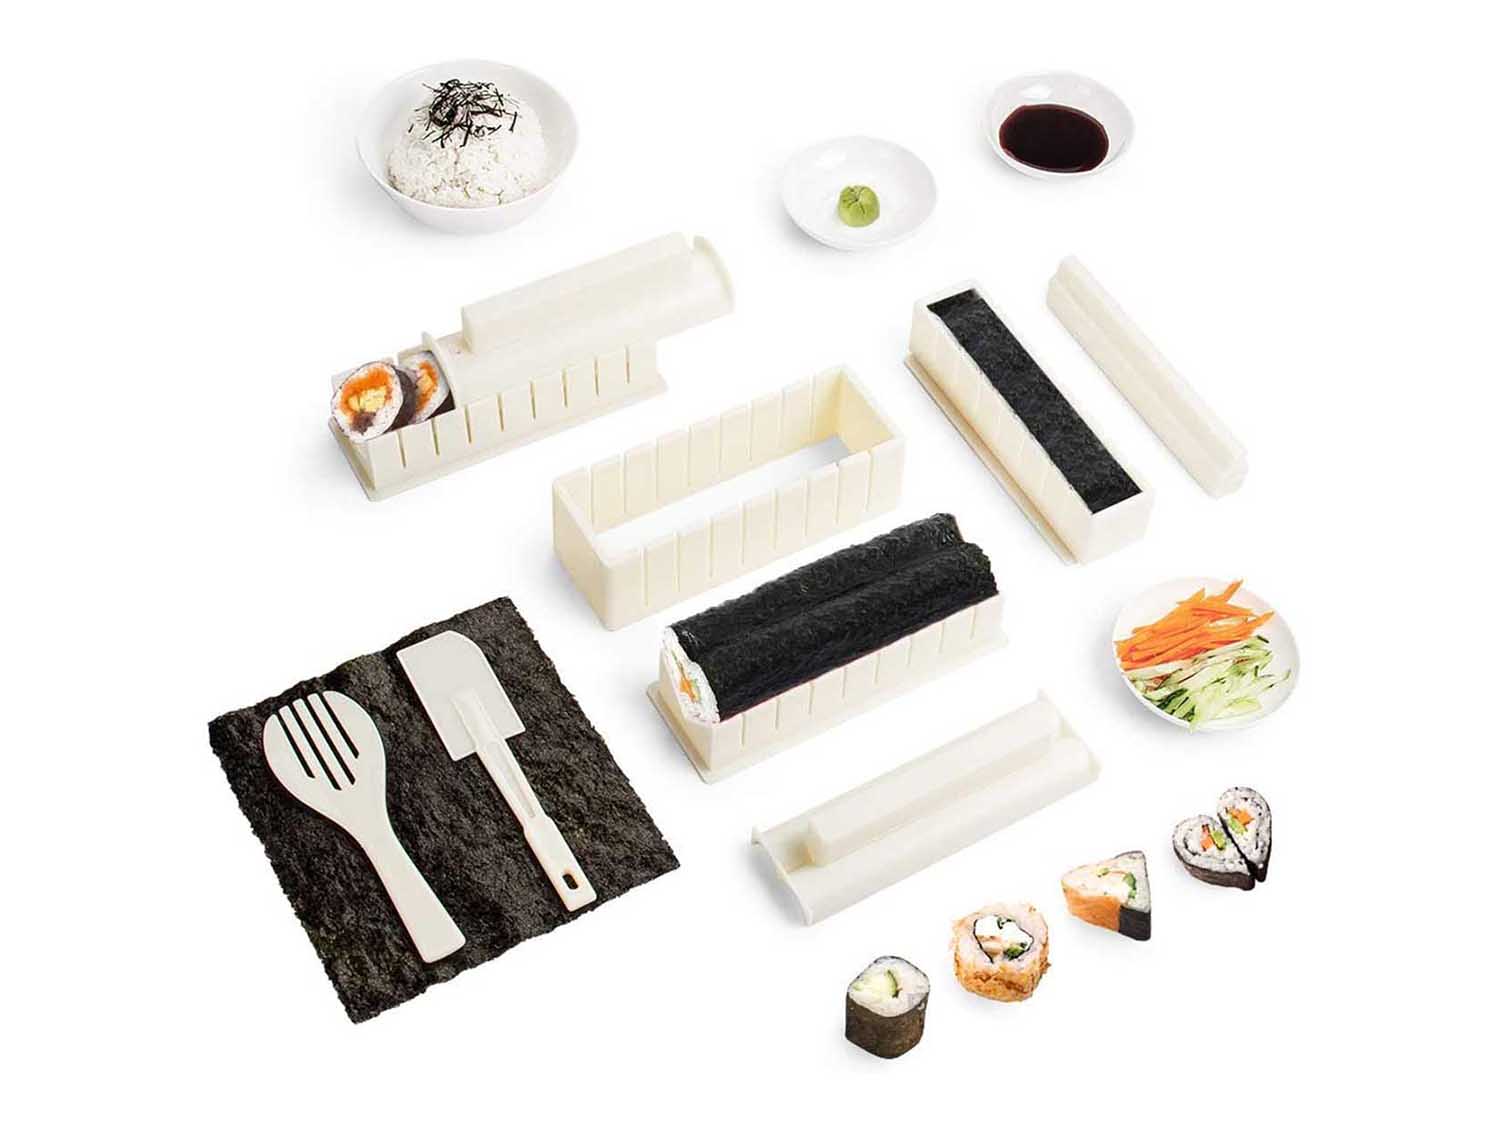 Sushiaya da sushi Maker Deluxe rosso completo con coltello e esclusiva online video tutorial 11 Piece DIY sushi set sushi roll Maker Maki rotoli facile e divertente per principianti Sushi kit 